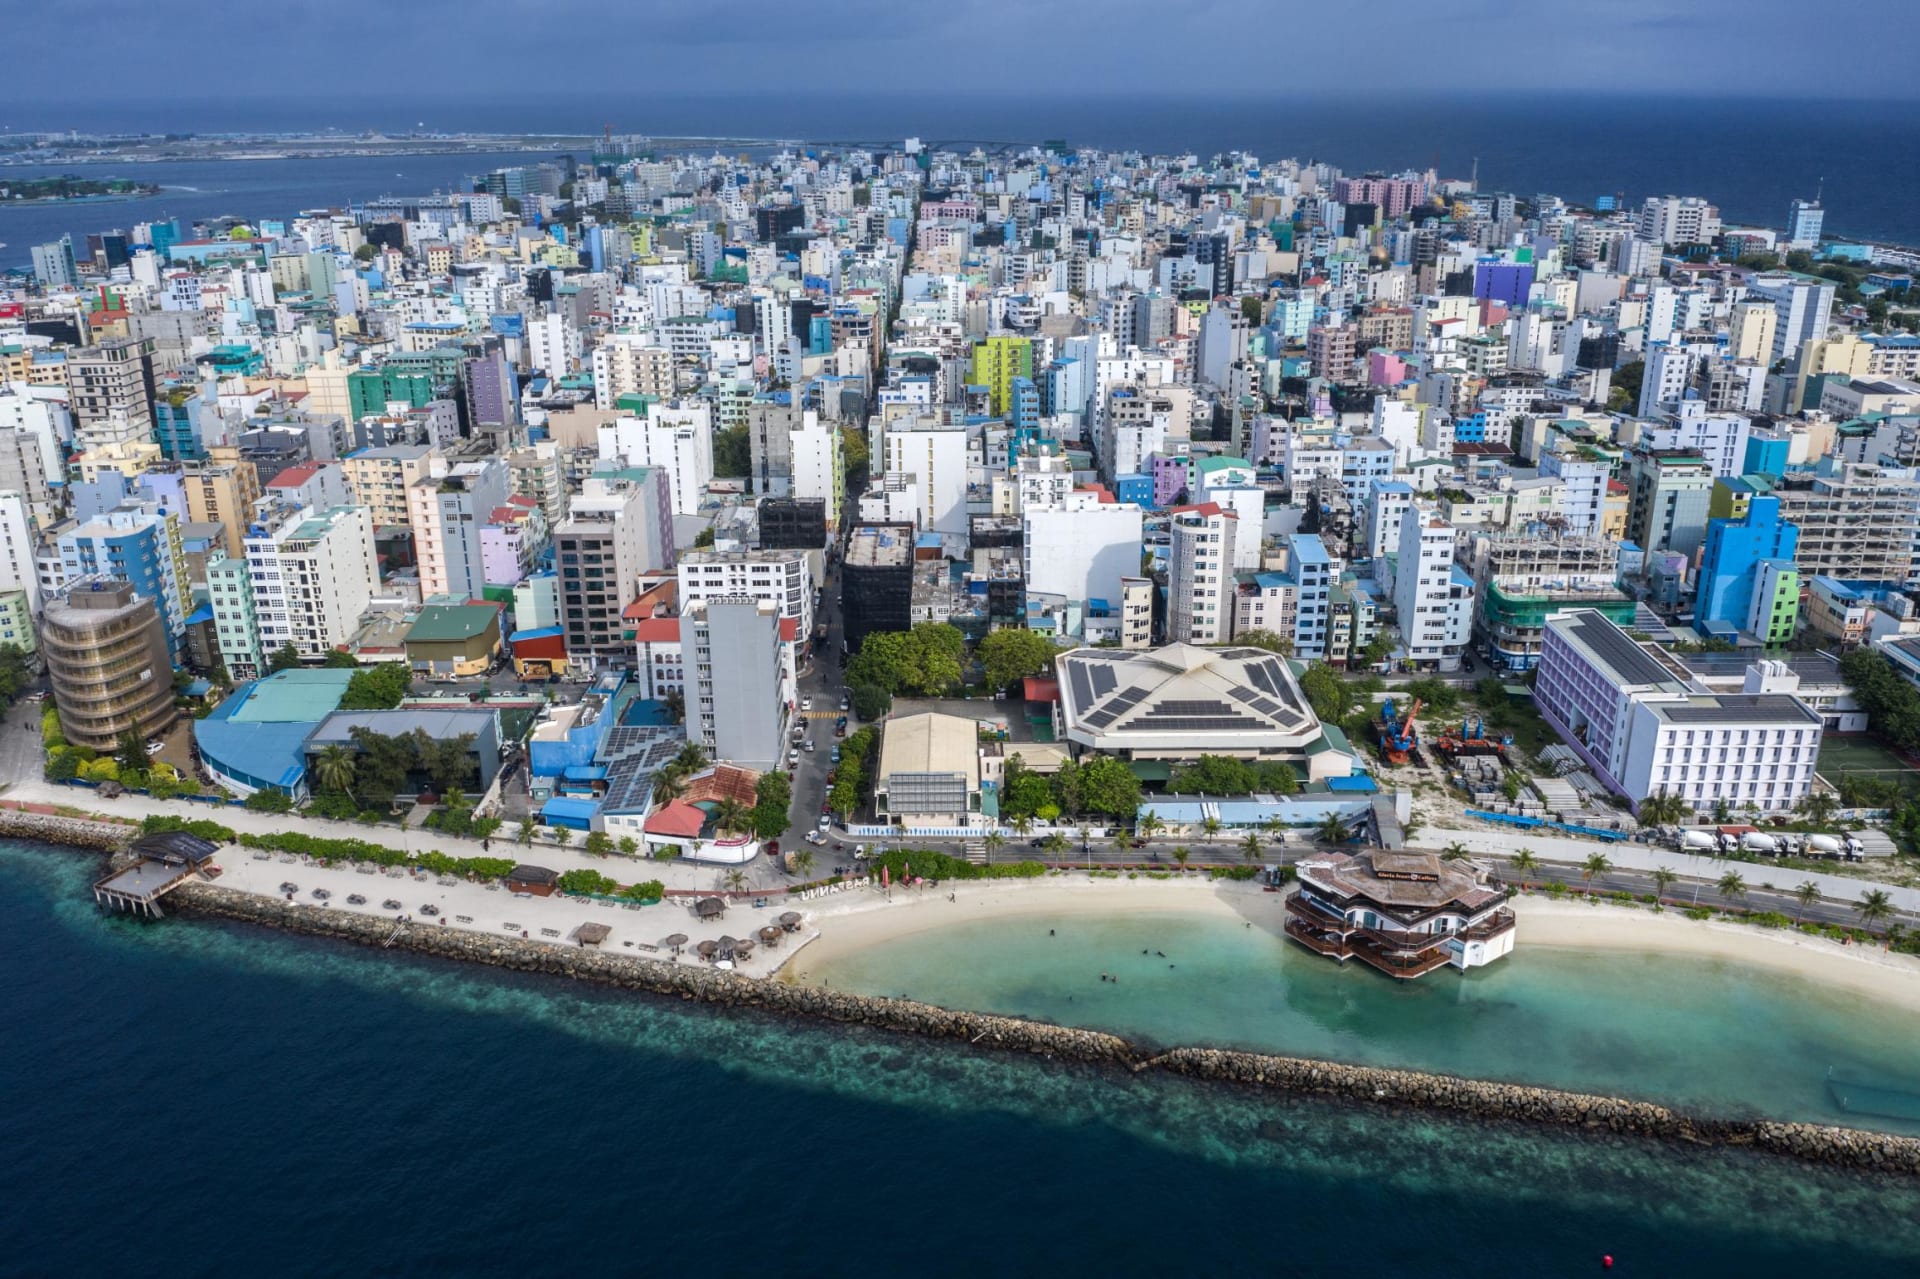 لمواجهة تغير المناخ.. بدأت مدينة عائمة تنبثق من مياه المالديف